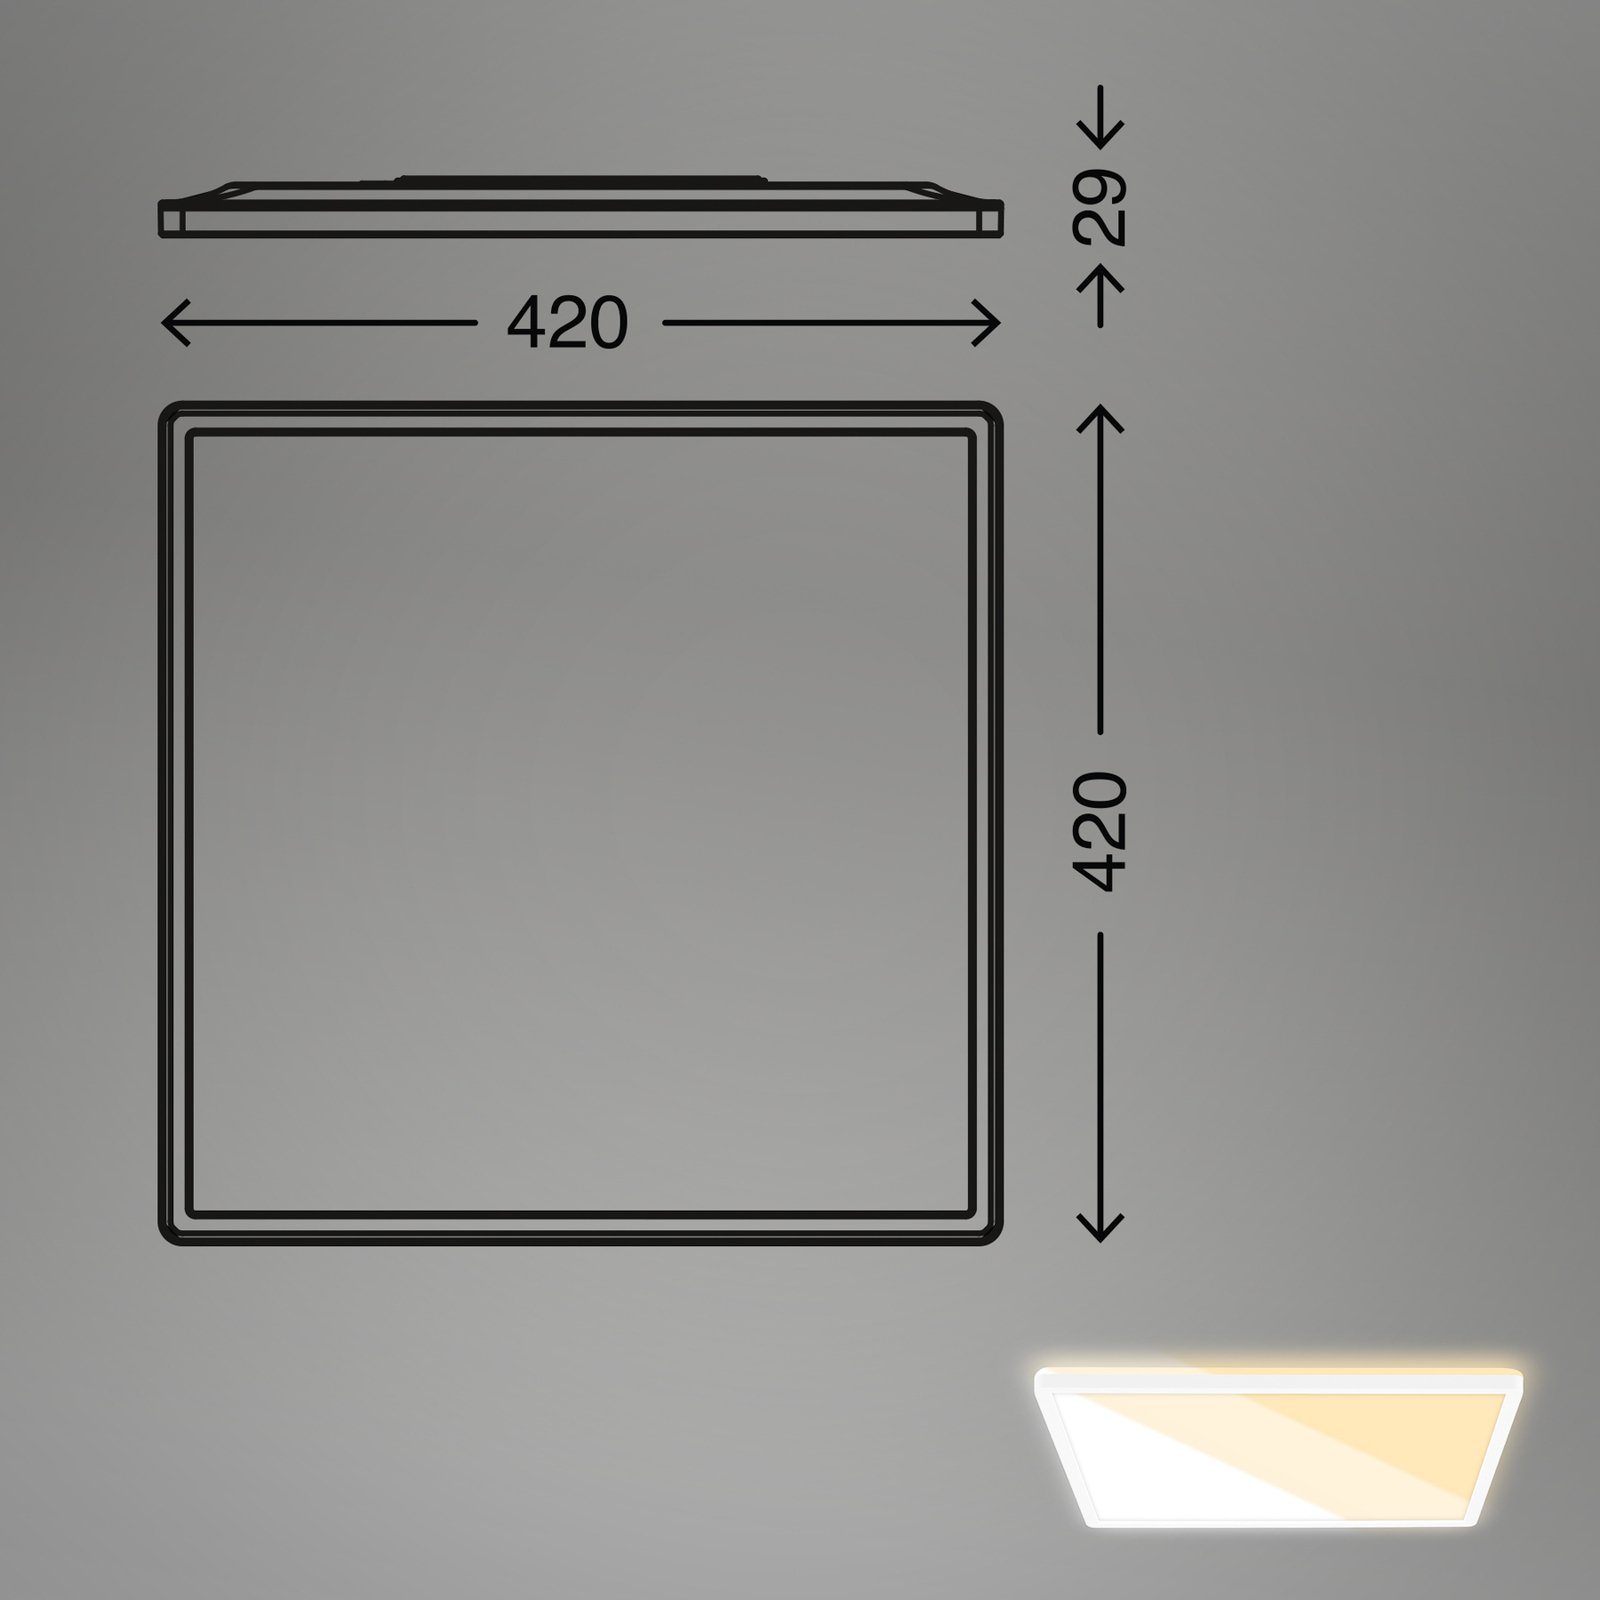 LED panel 7558 Light colour adjustable 42 x 42 cm